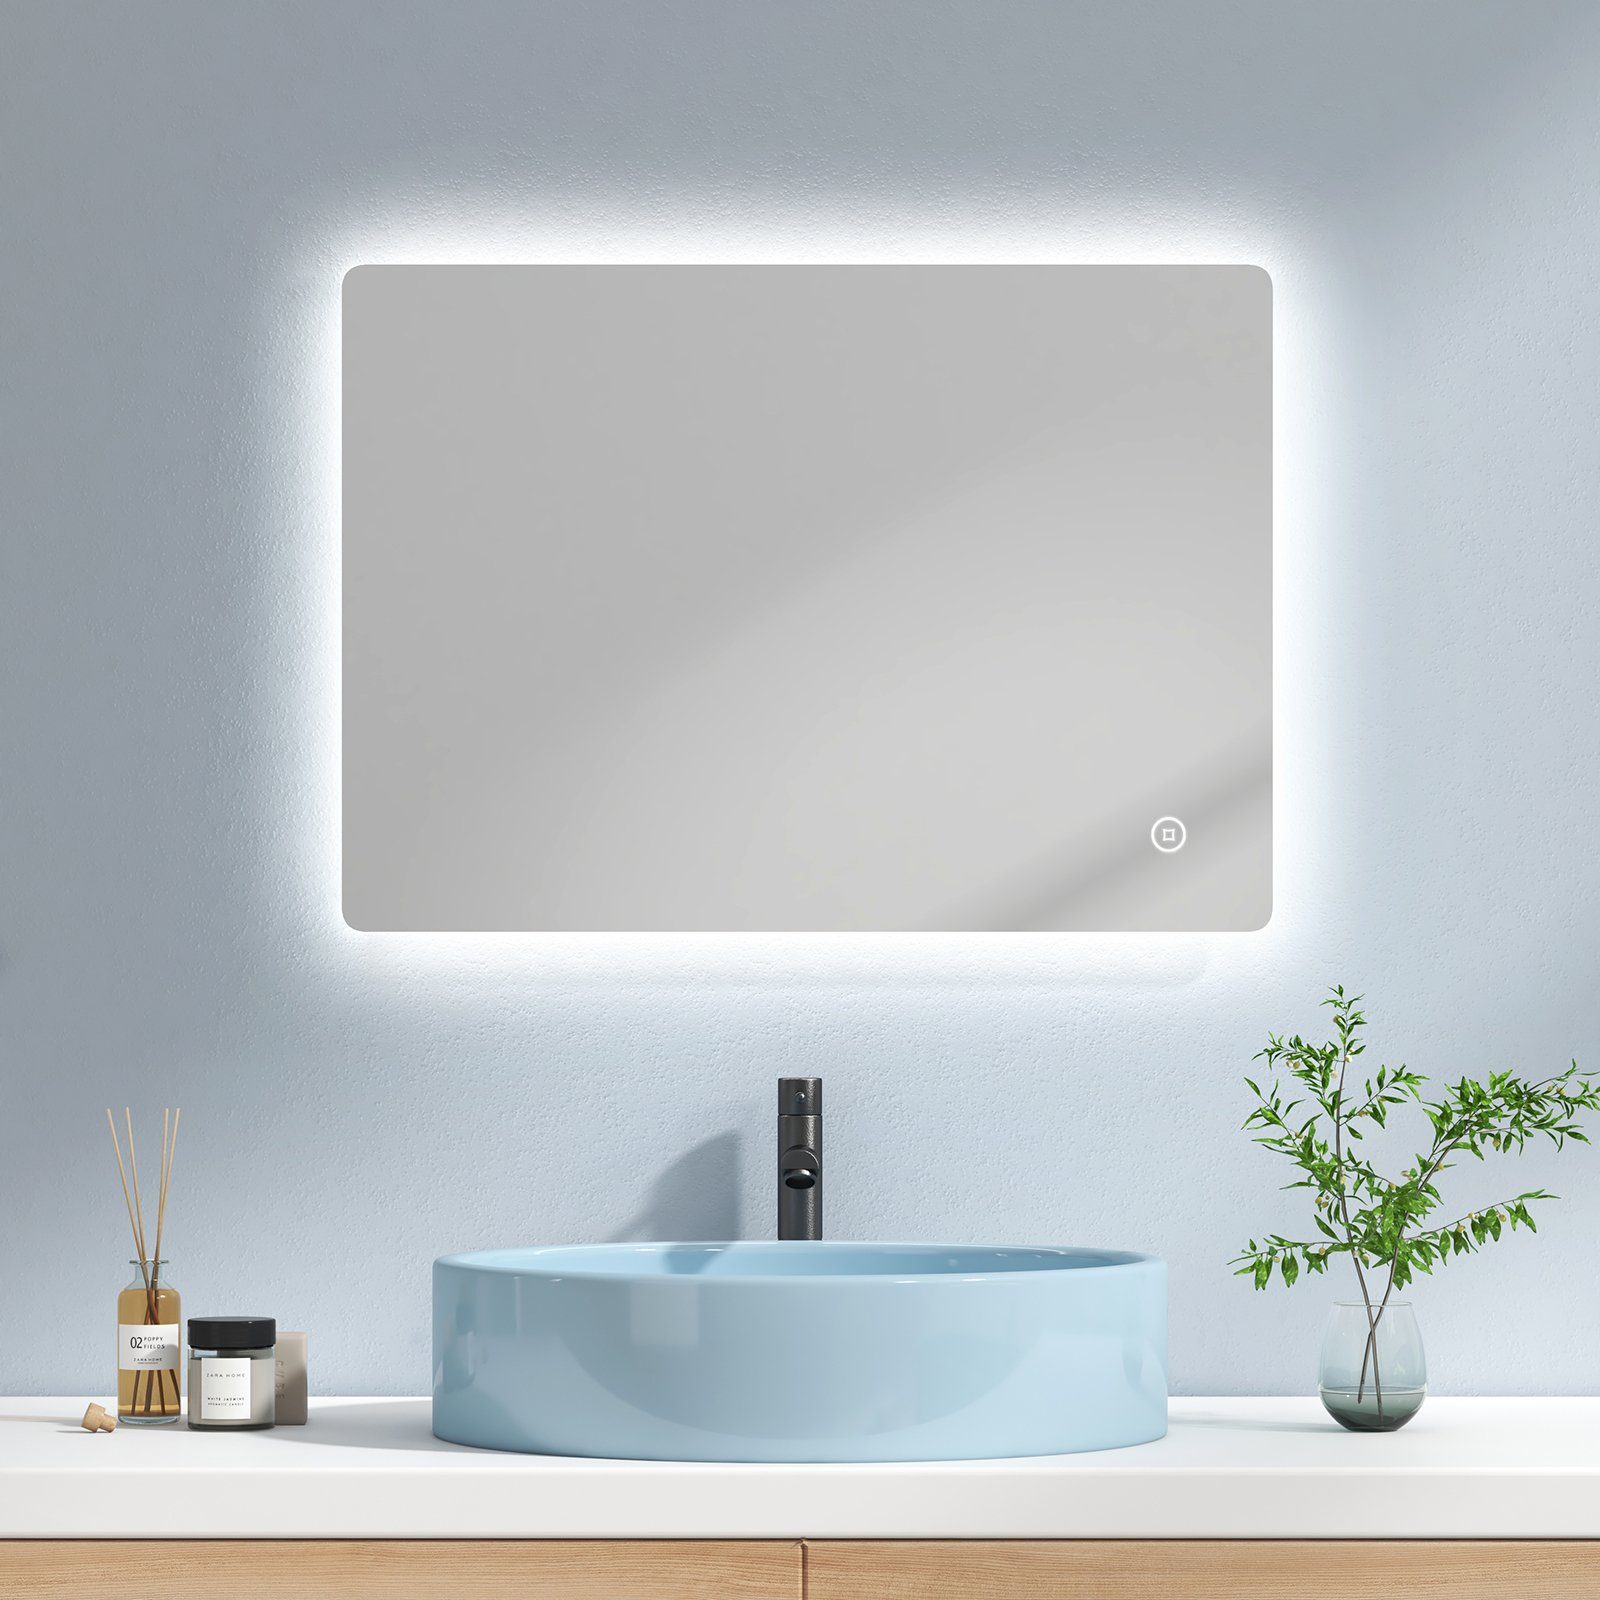 EMKE Badspiegel »EMKE LED Badspiegel mit Antibeschlag Rahmenloser  Badezimmerspiegel«, Wandspiegel mit Beleuchtung und Touch-Schalter